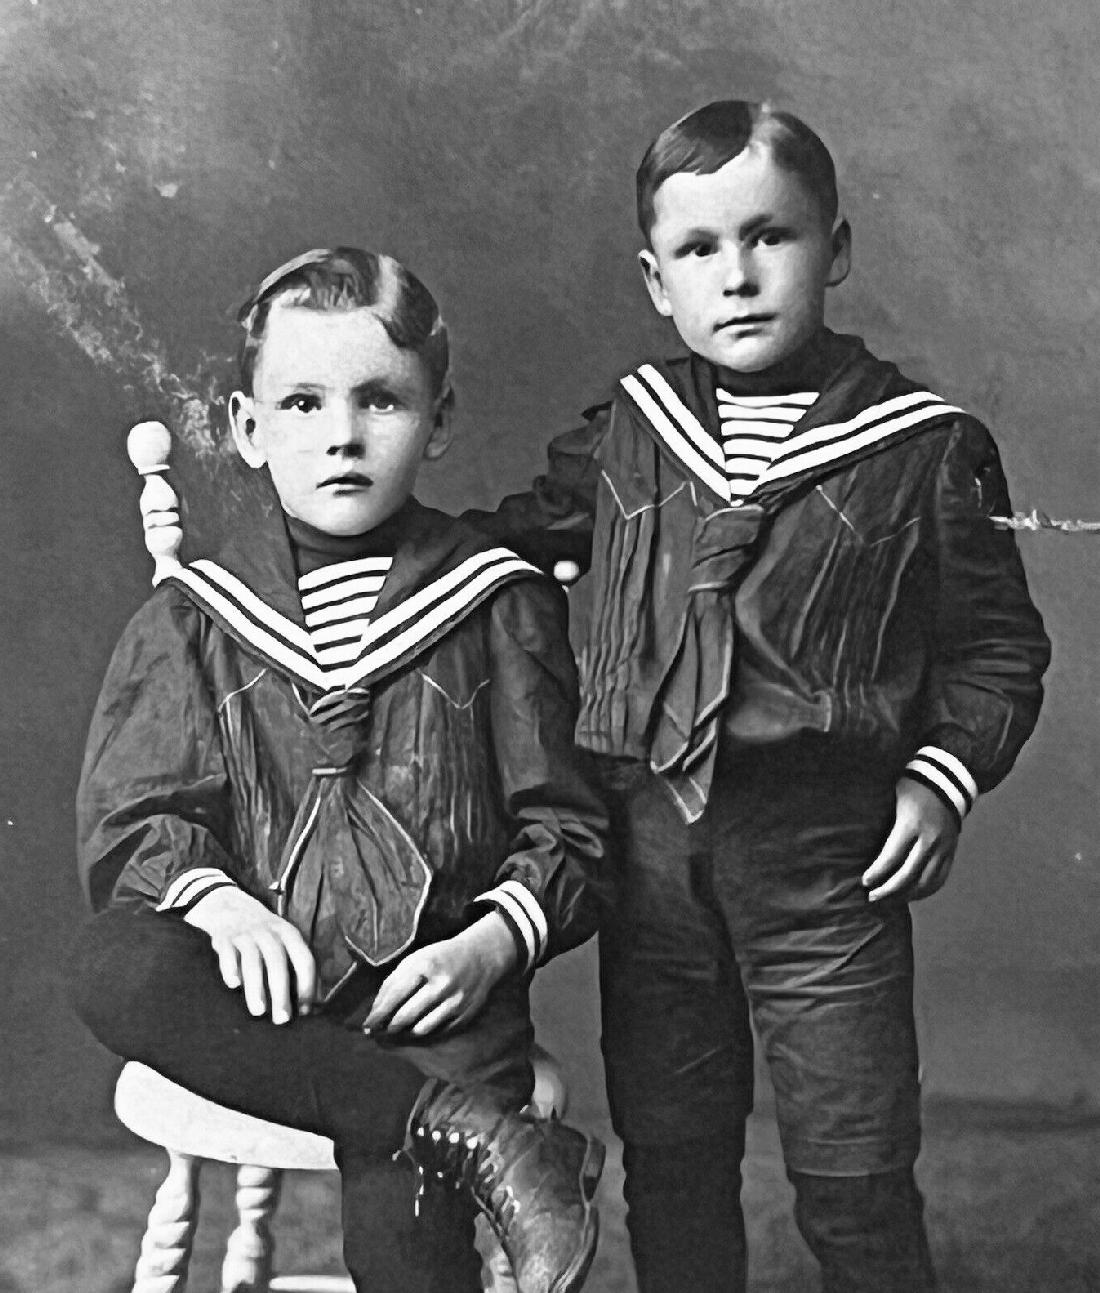 sailor suit garments 1900s pants